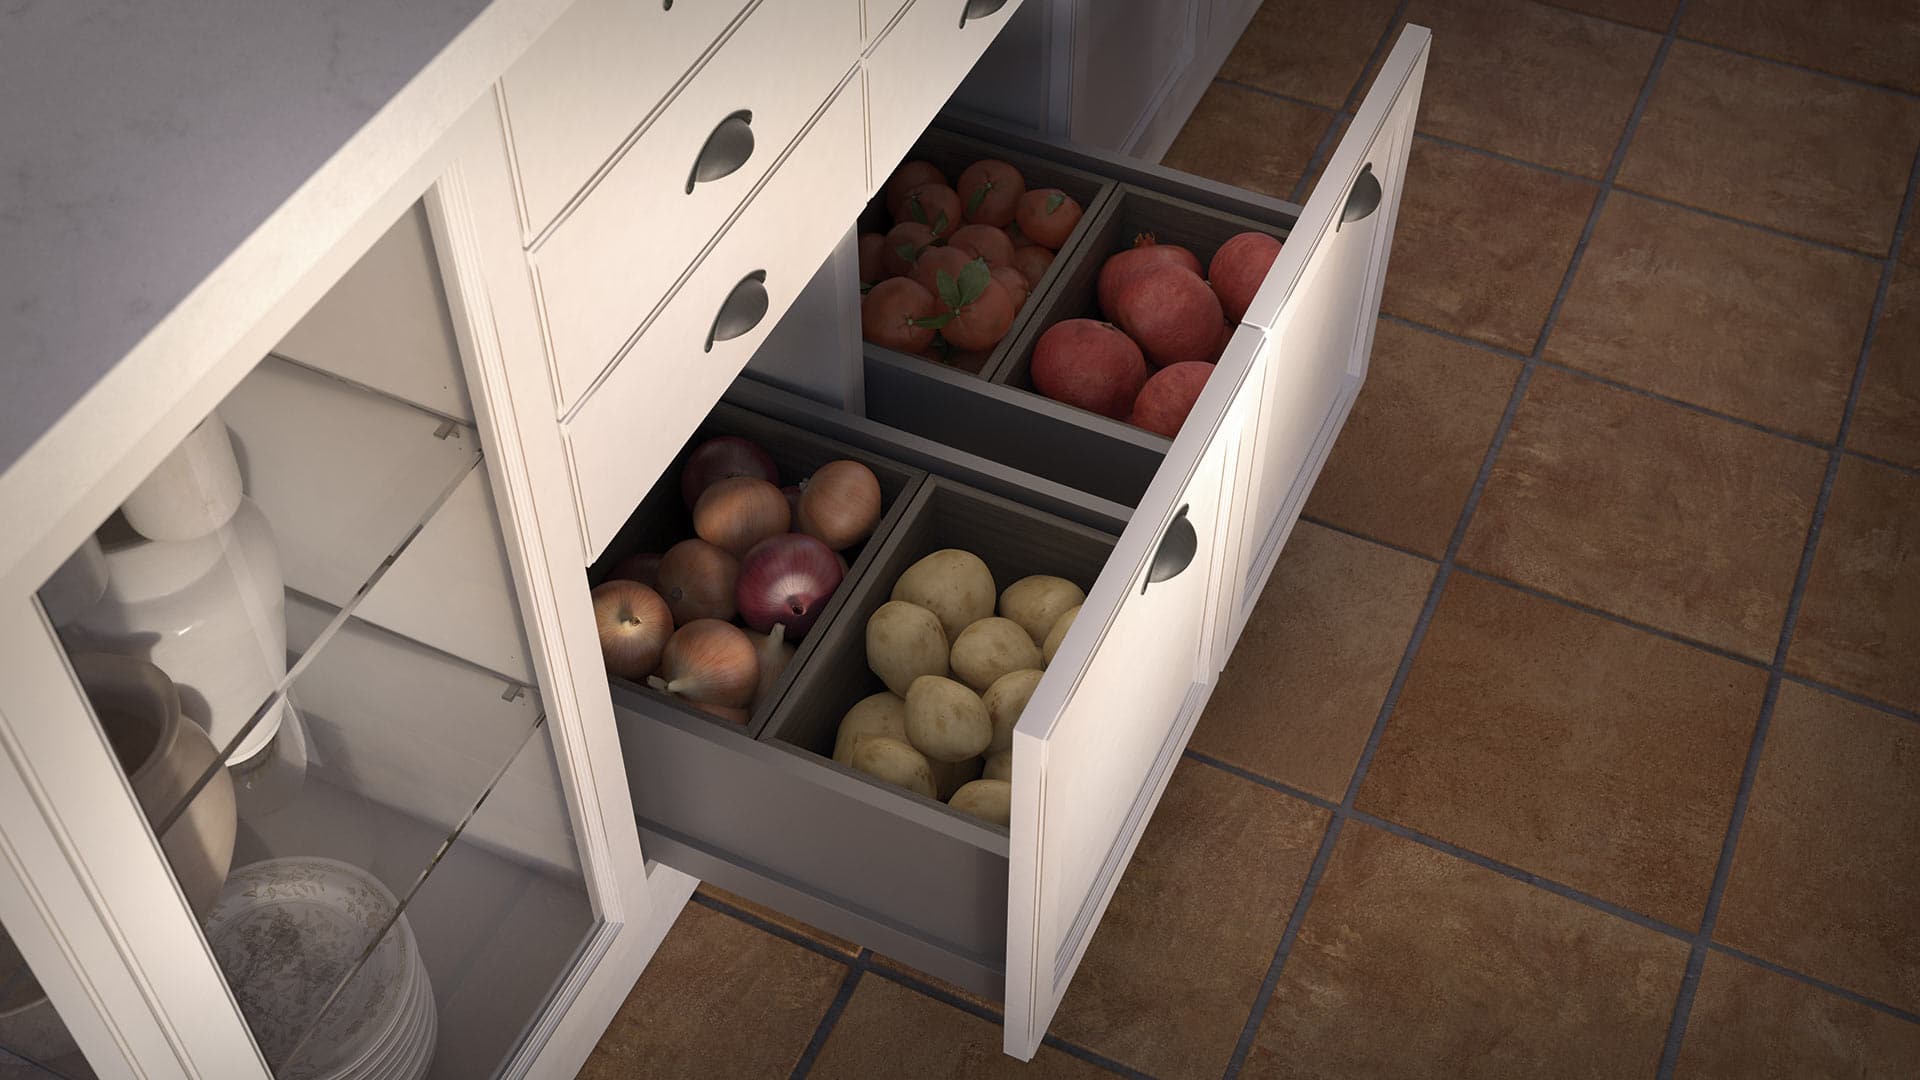 Vista detallada de un cajón de mueble blanco abierto con frutas en su interior